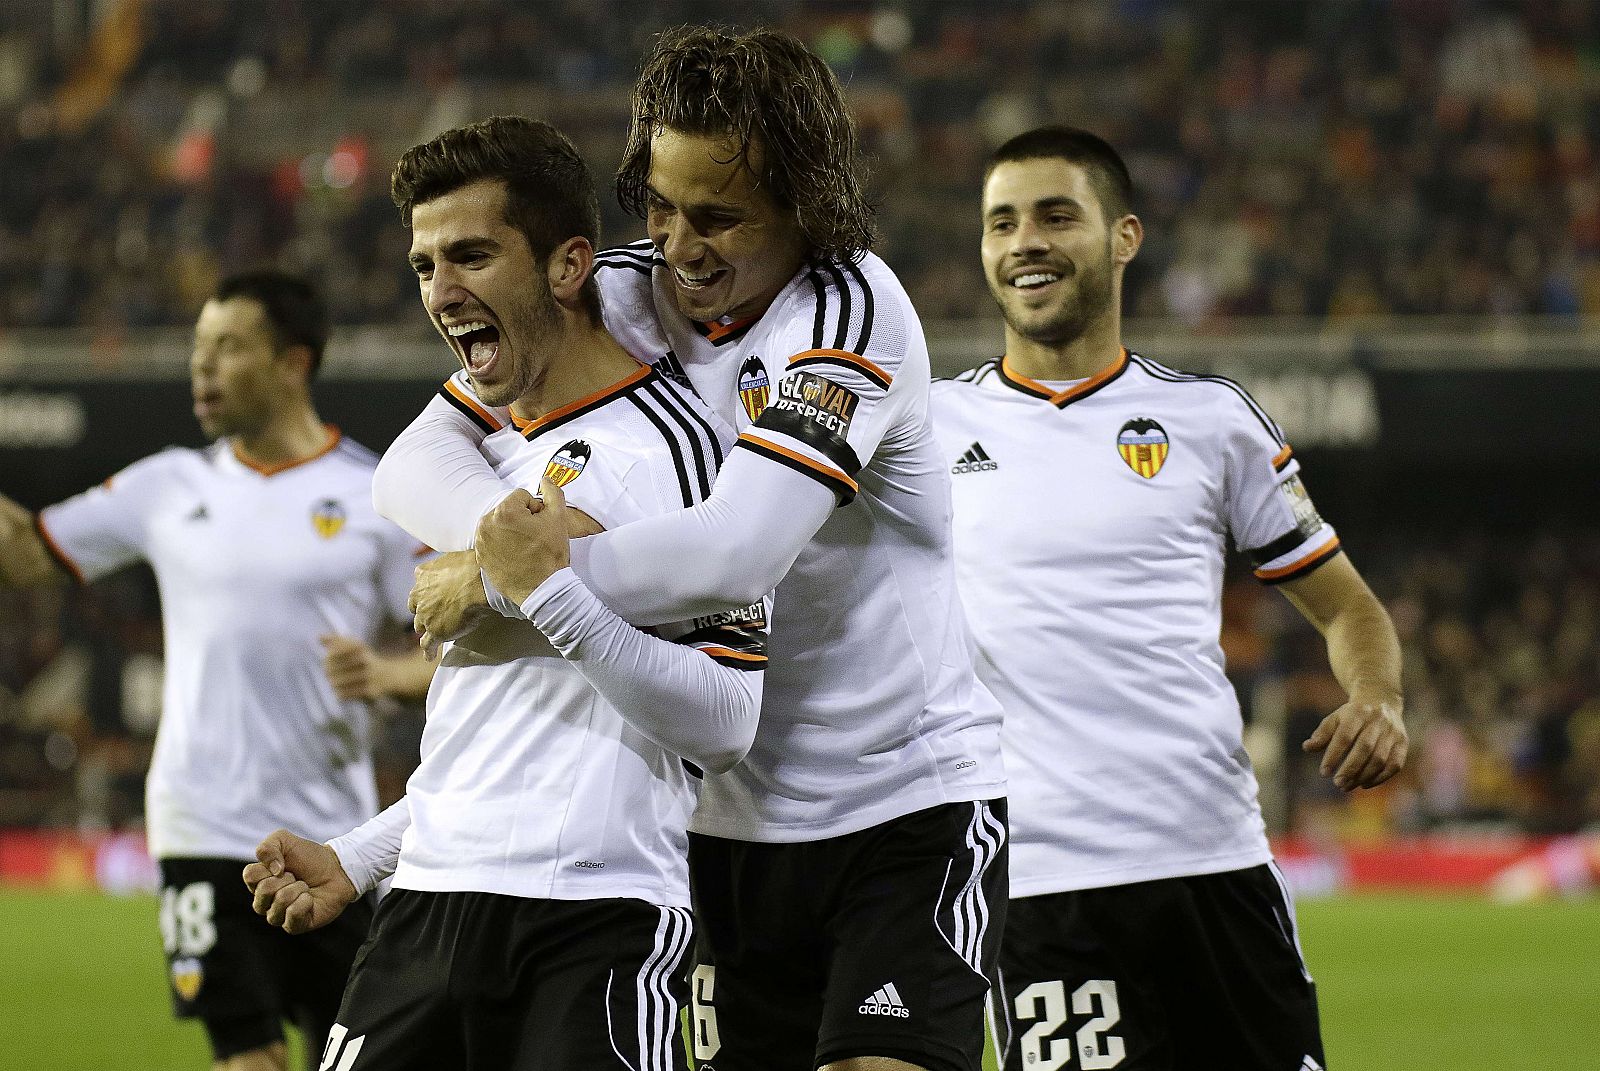 El lateral zurdo Gayá celebra el primer gol valencianista con sus compañeros.